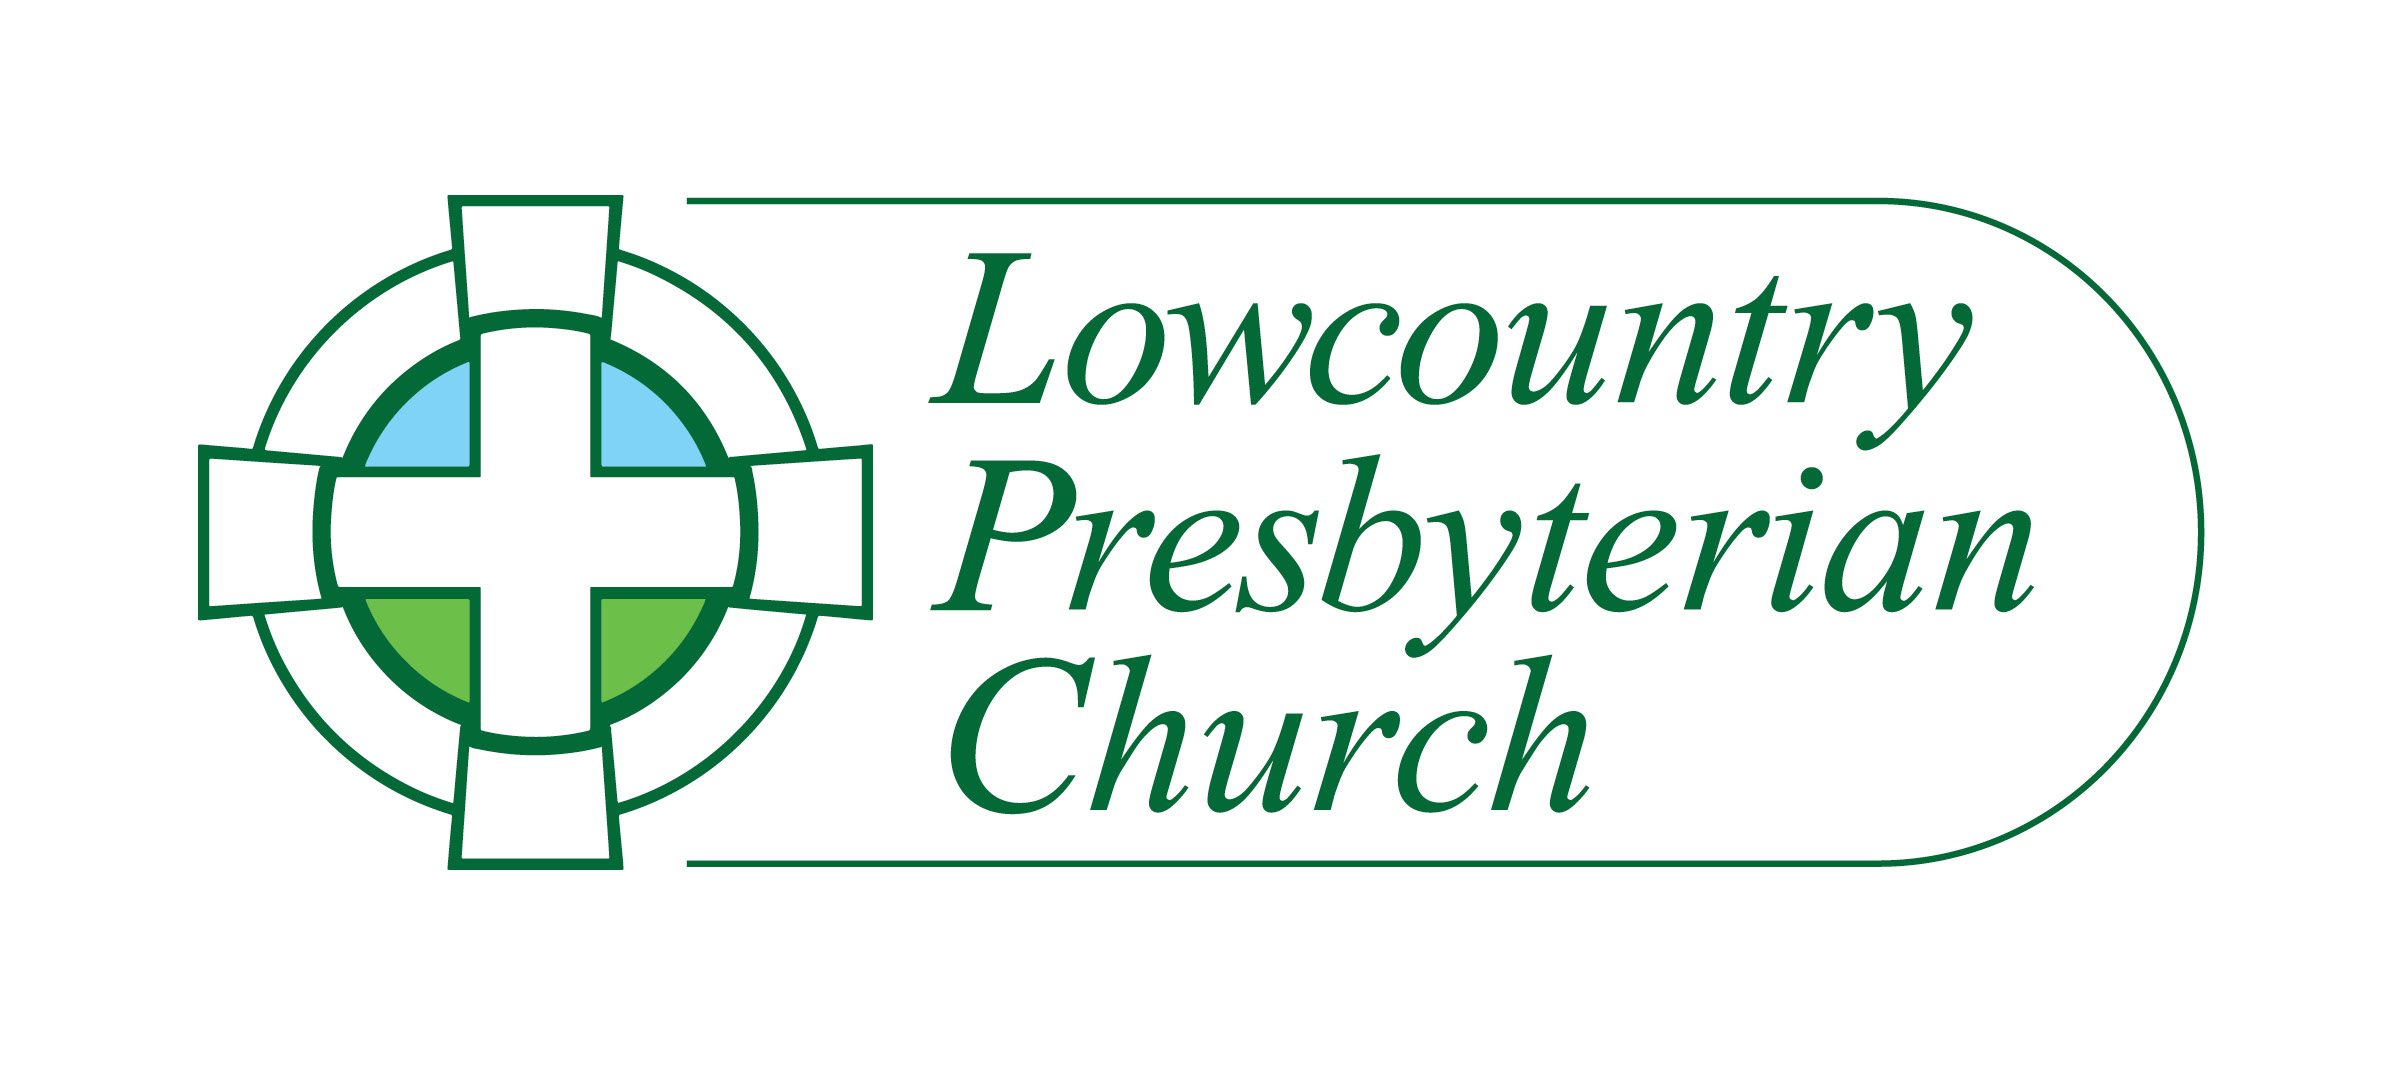 4.2 Lowcountry Presbyterian Church 